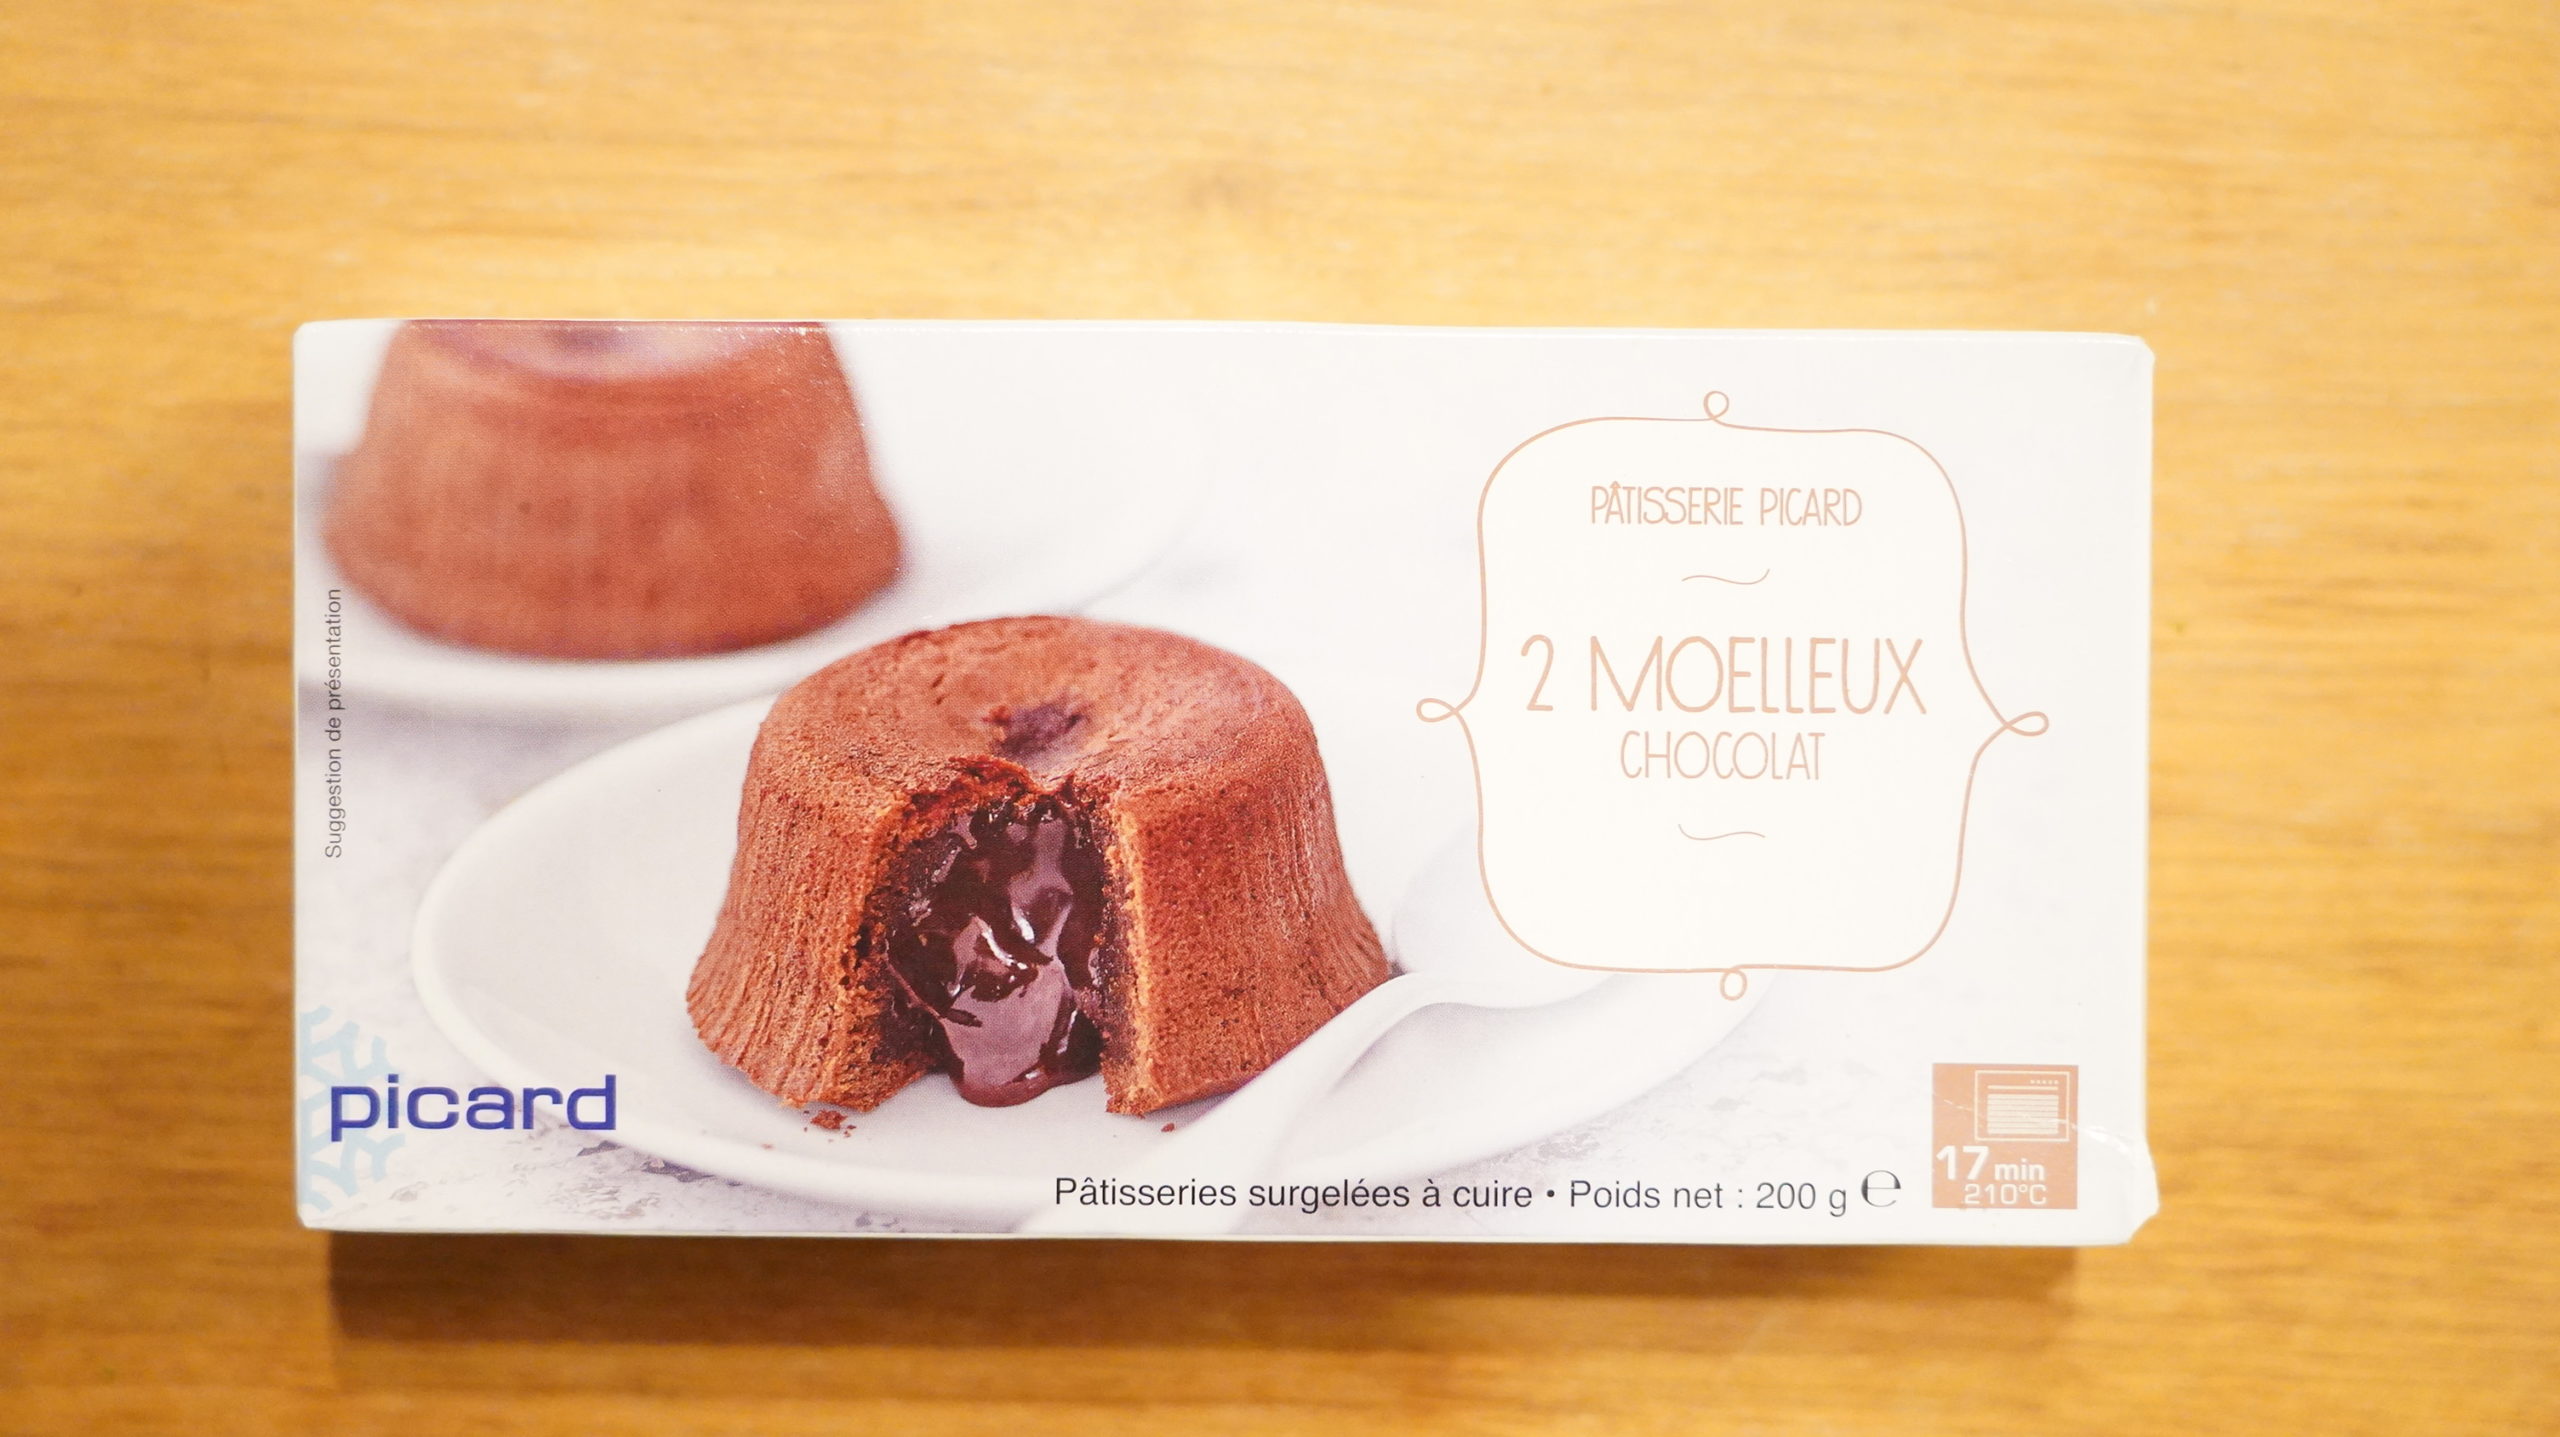 ピカールのおすすめ冷凍食品「モアローショコラ」のパッケージ写真